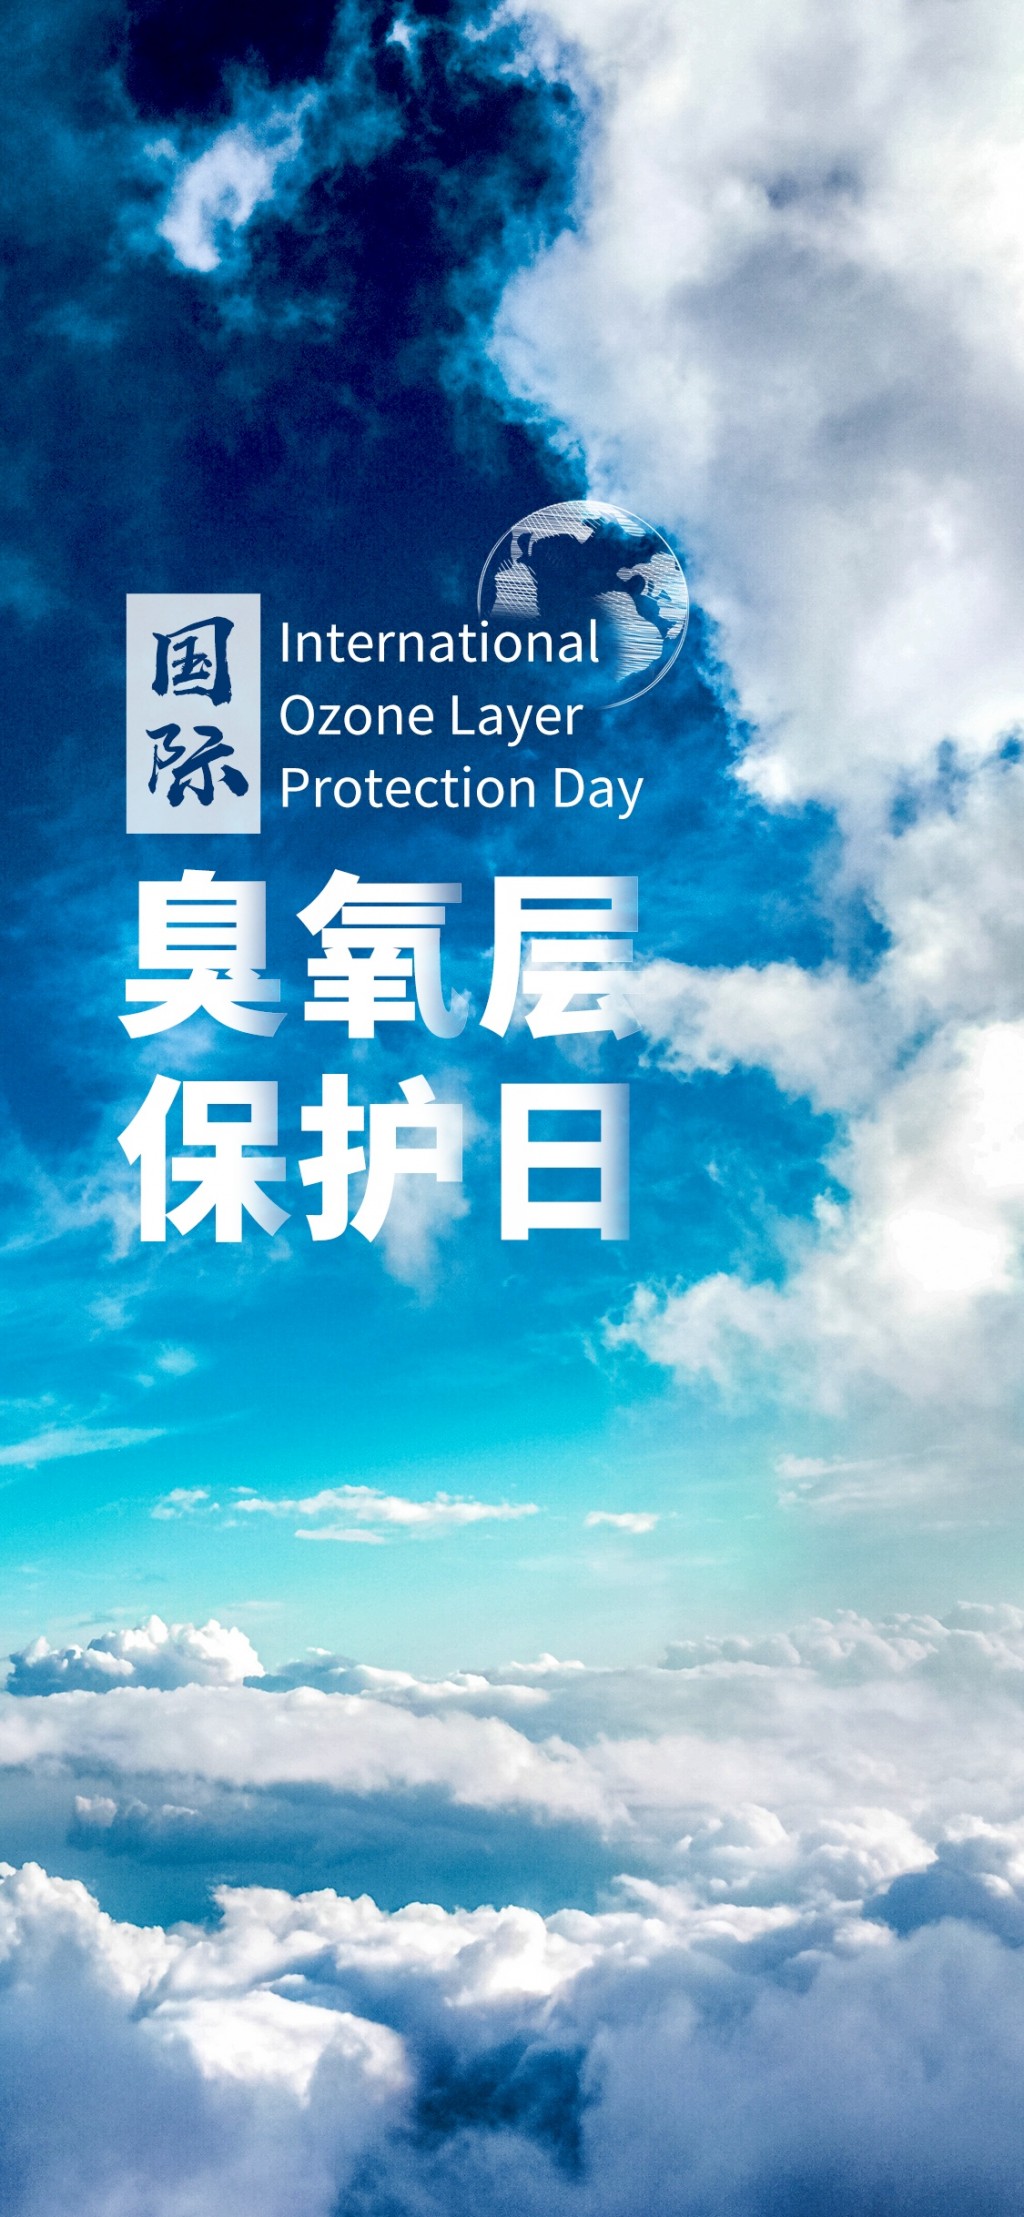 国际臭氧层保护日之蔚蓝天空